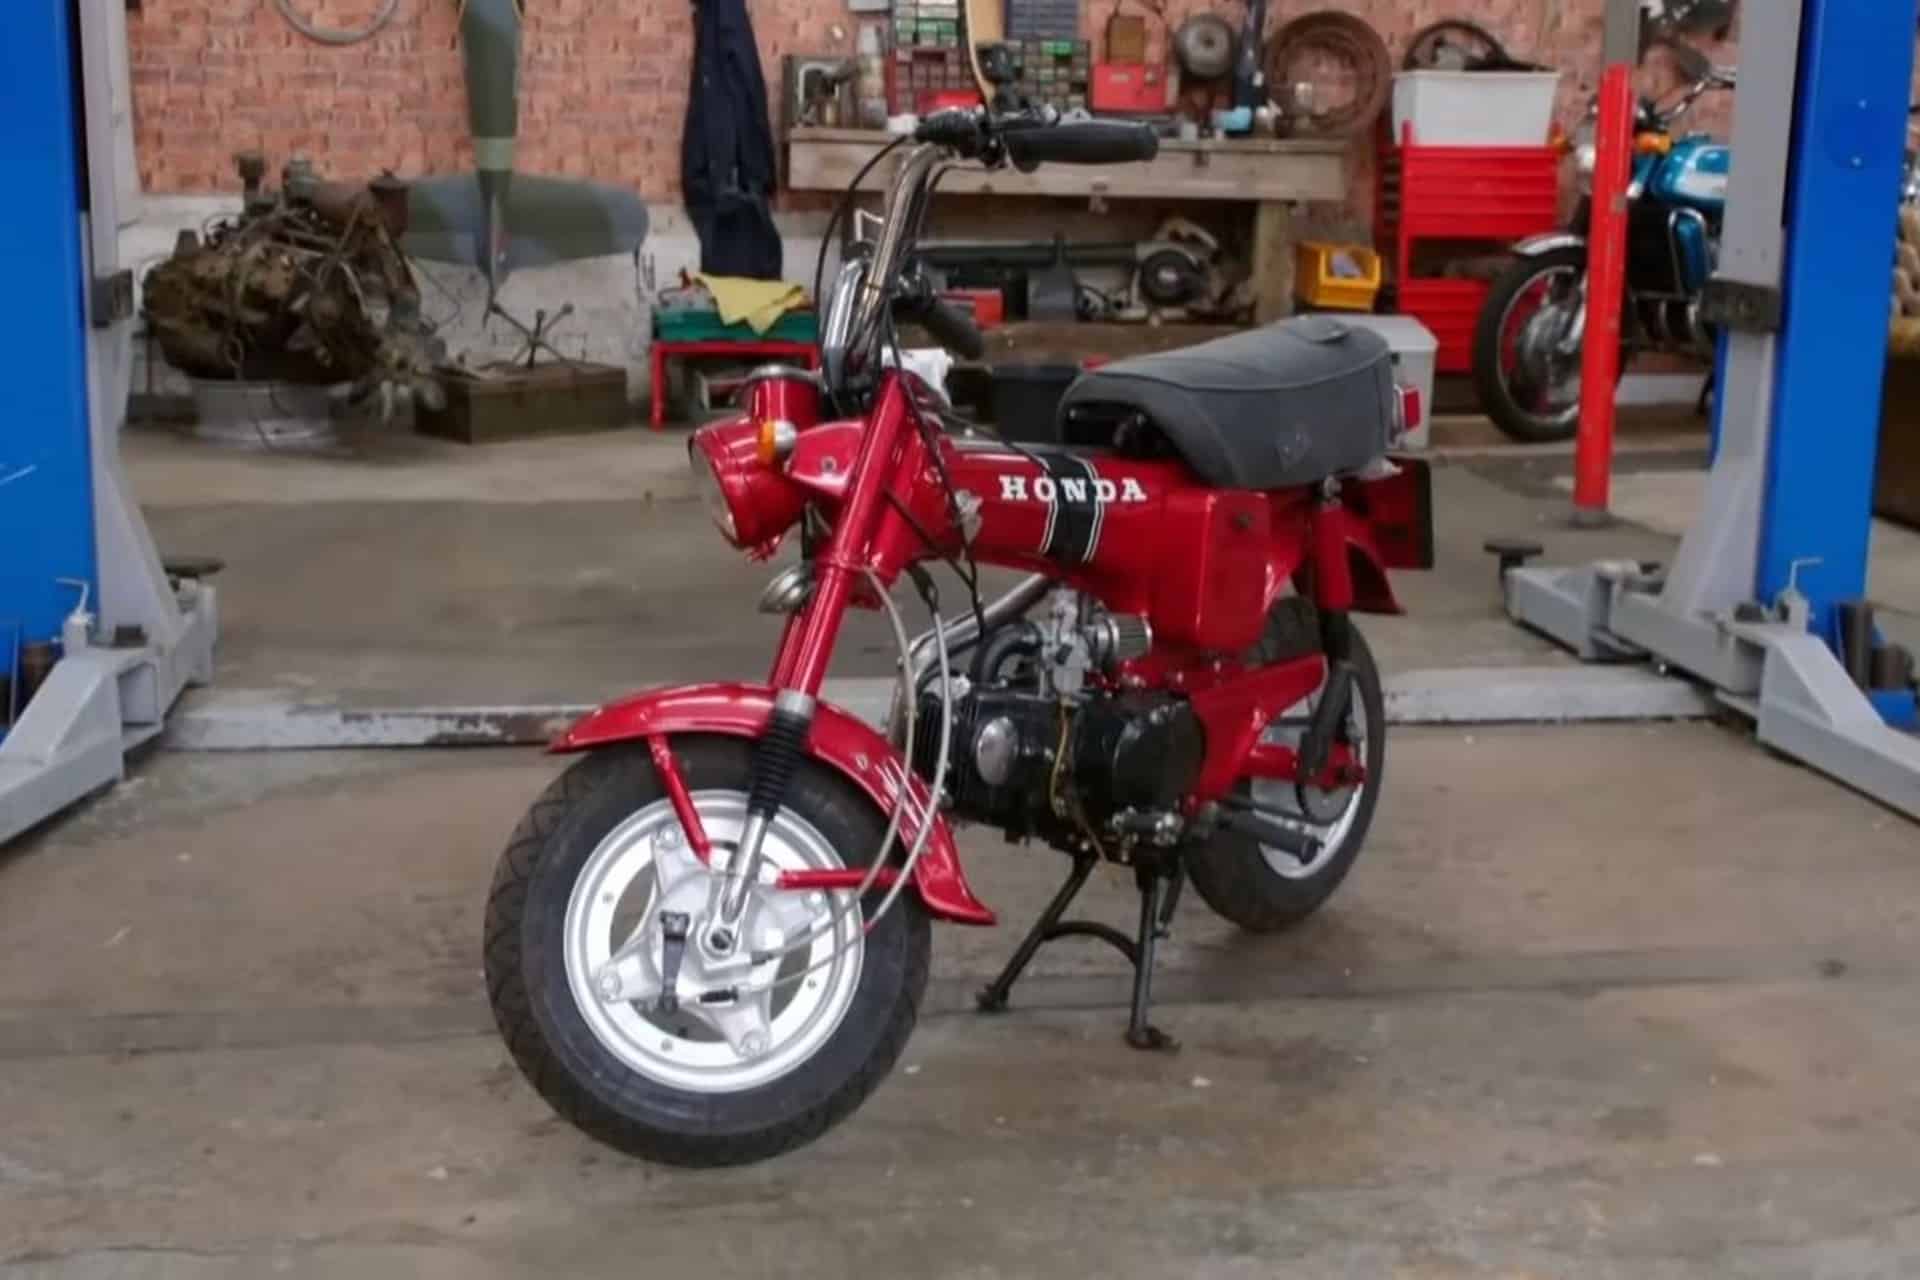 "Joyas sobre ruedas" se pasa a las motos: El mítico programa televisivo restaura una Honda Dax